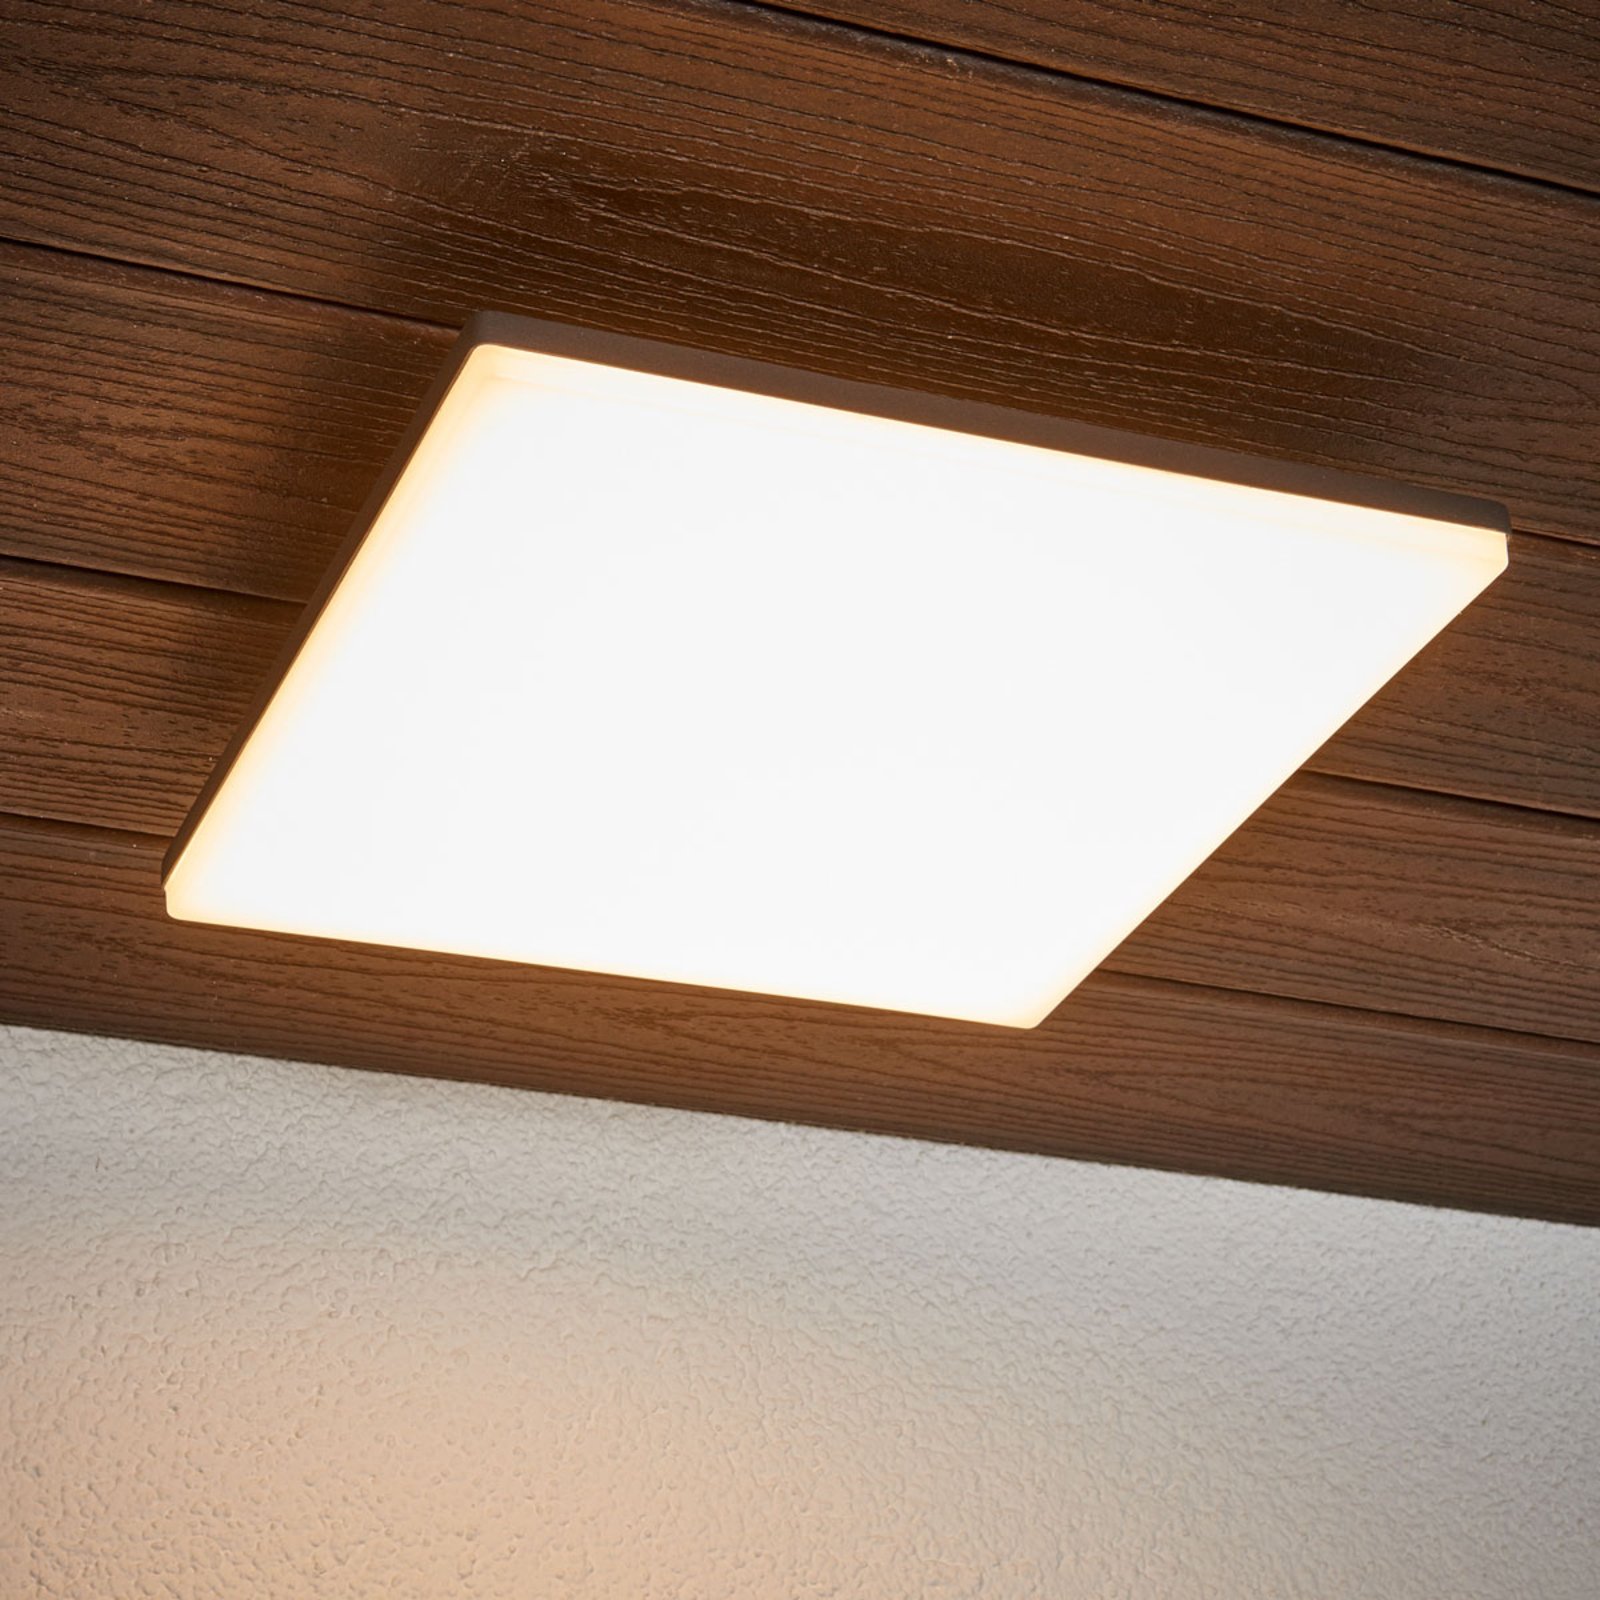 Sensorstyrd utomhustaklampa Henni med LED-lampor